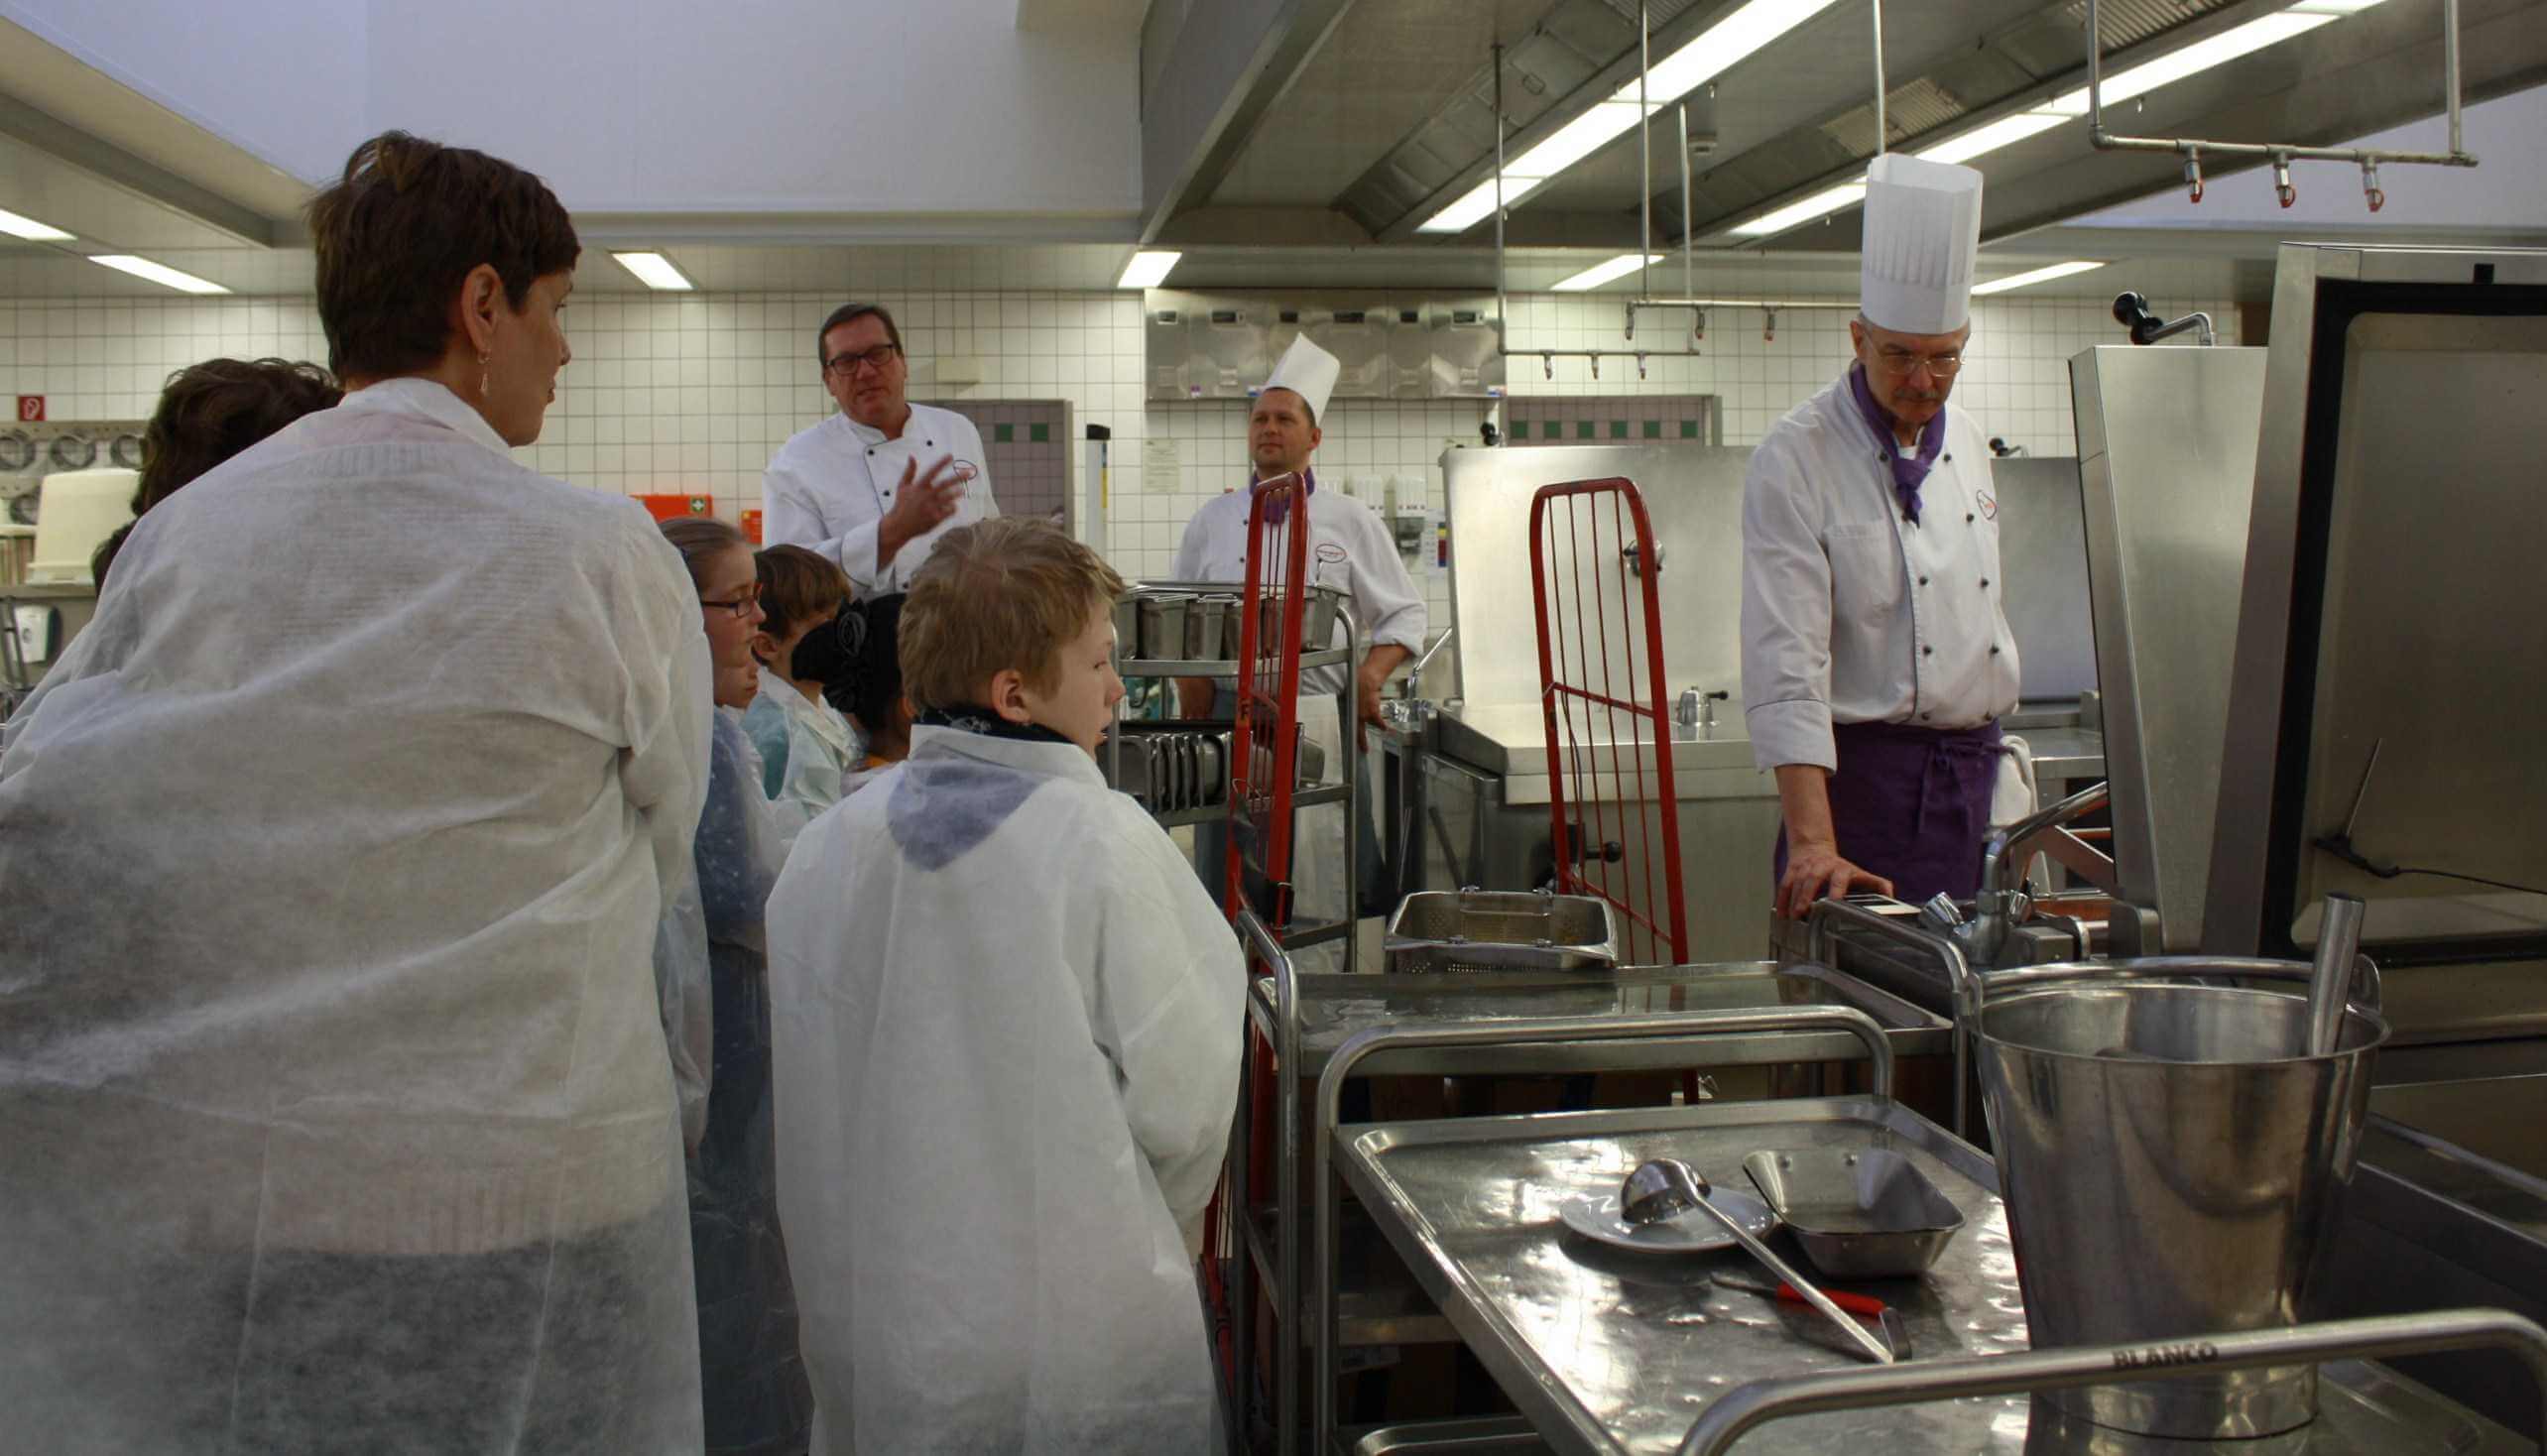 Wie man klimagerecht kocht: Schüler schauen in die Kochtöpfe der FU-Mensa / SchülerUni gestartet